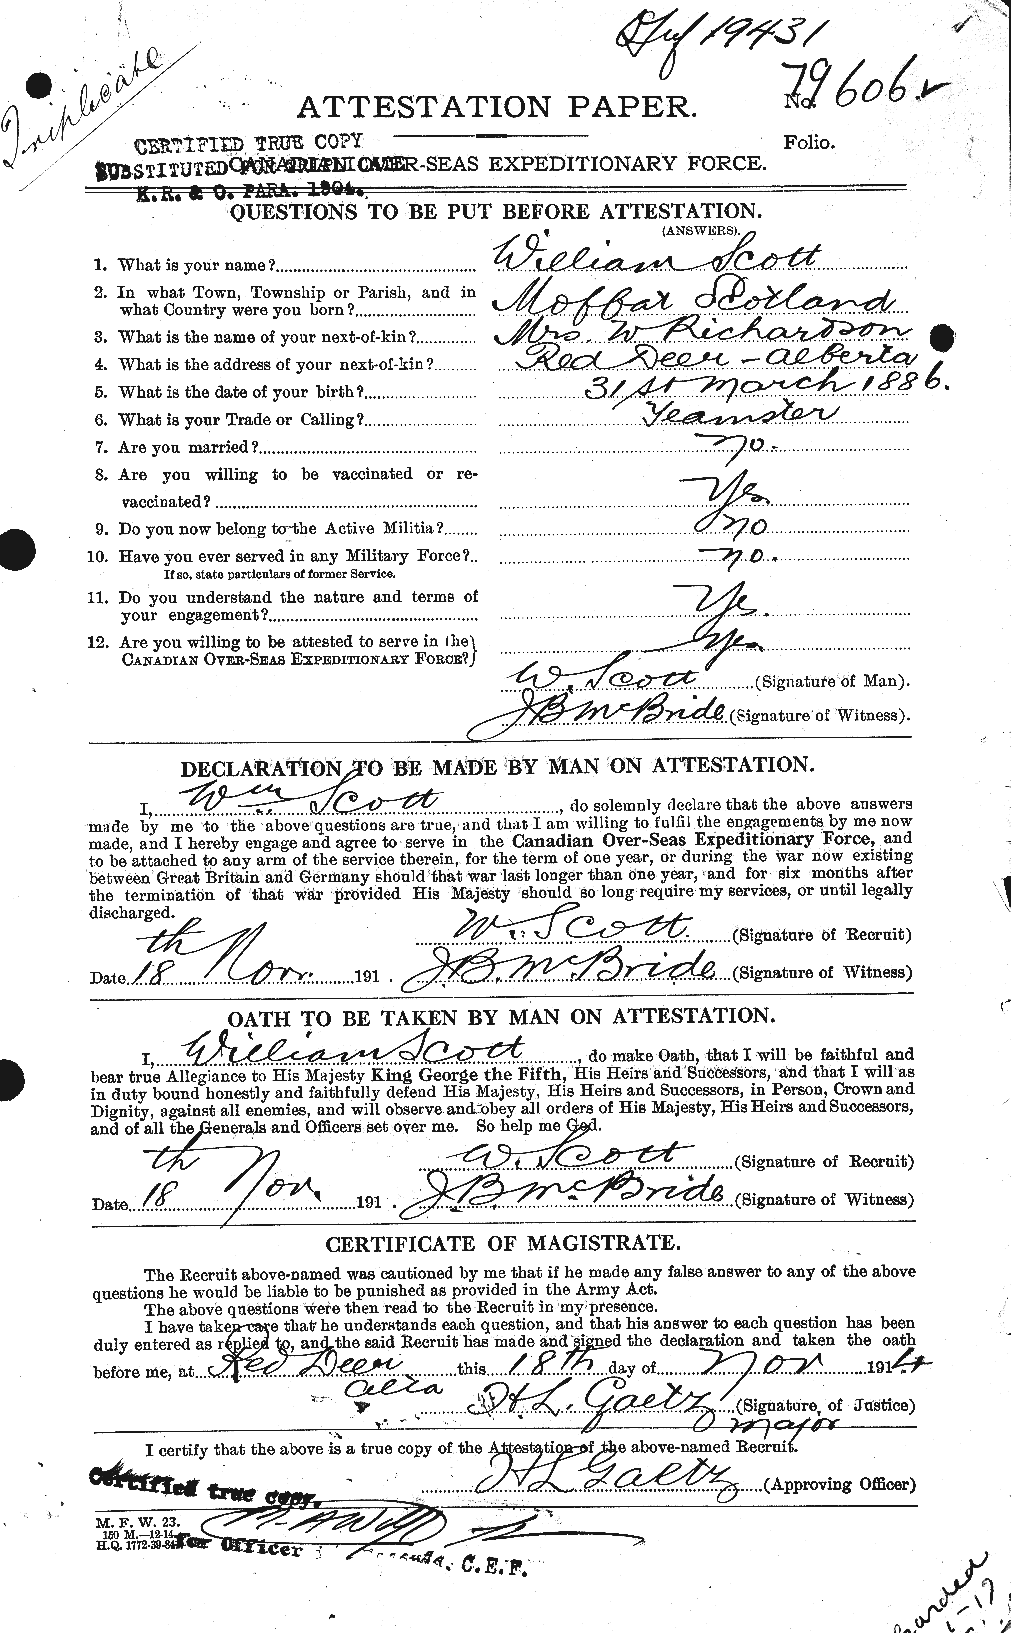 Dossiers du Personnel de la Première Guerre mondiale - CEC 087363a